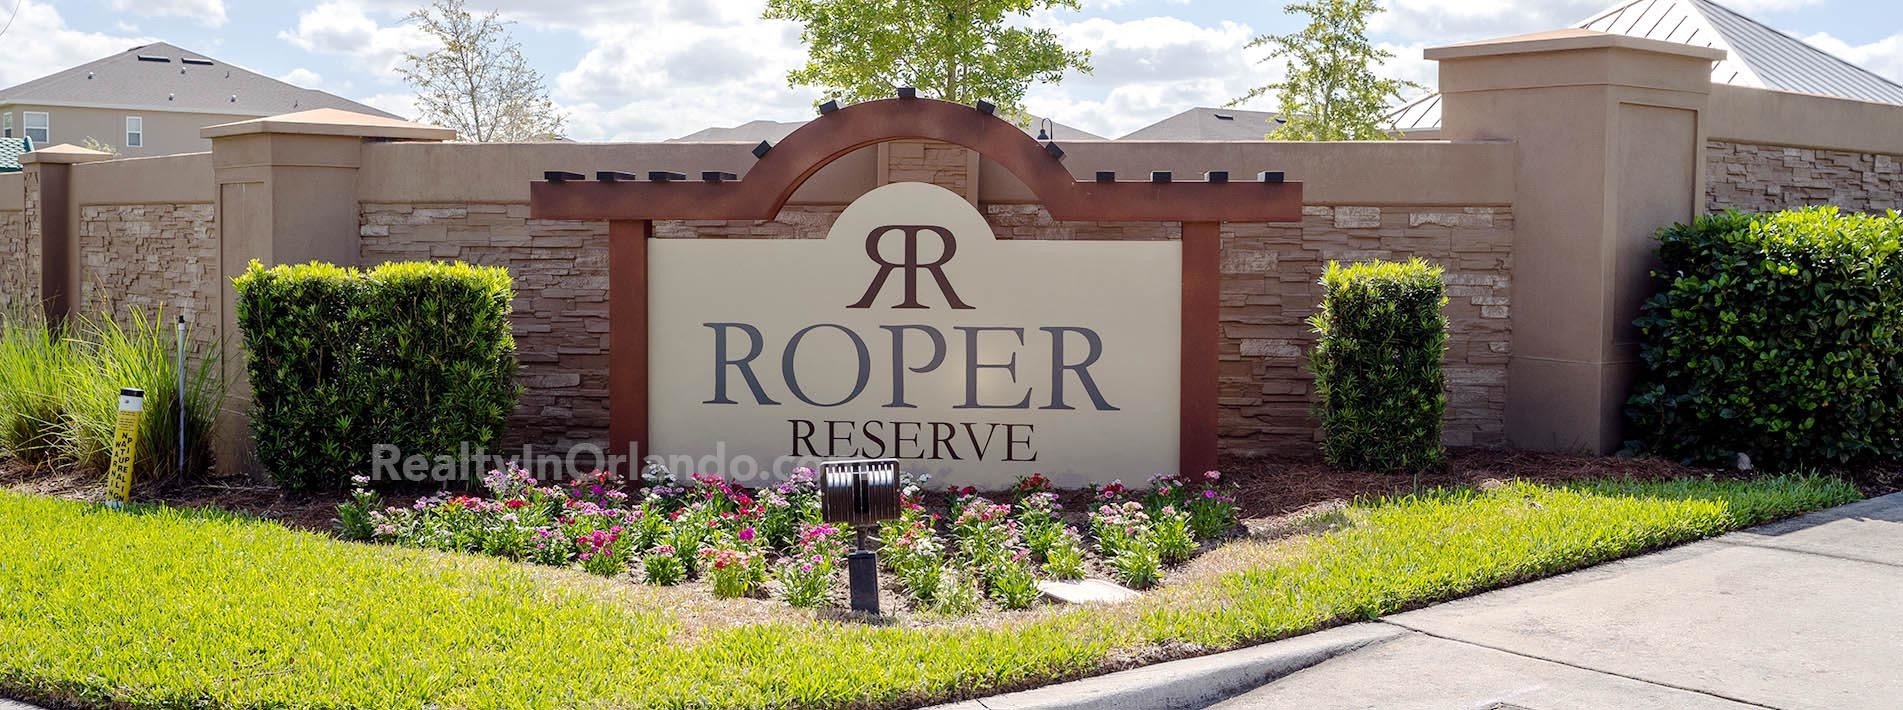 Roper Reserve Real Estate